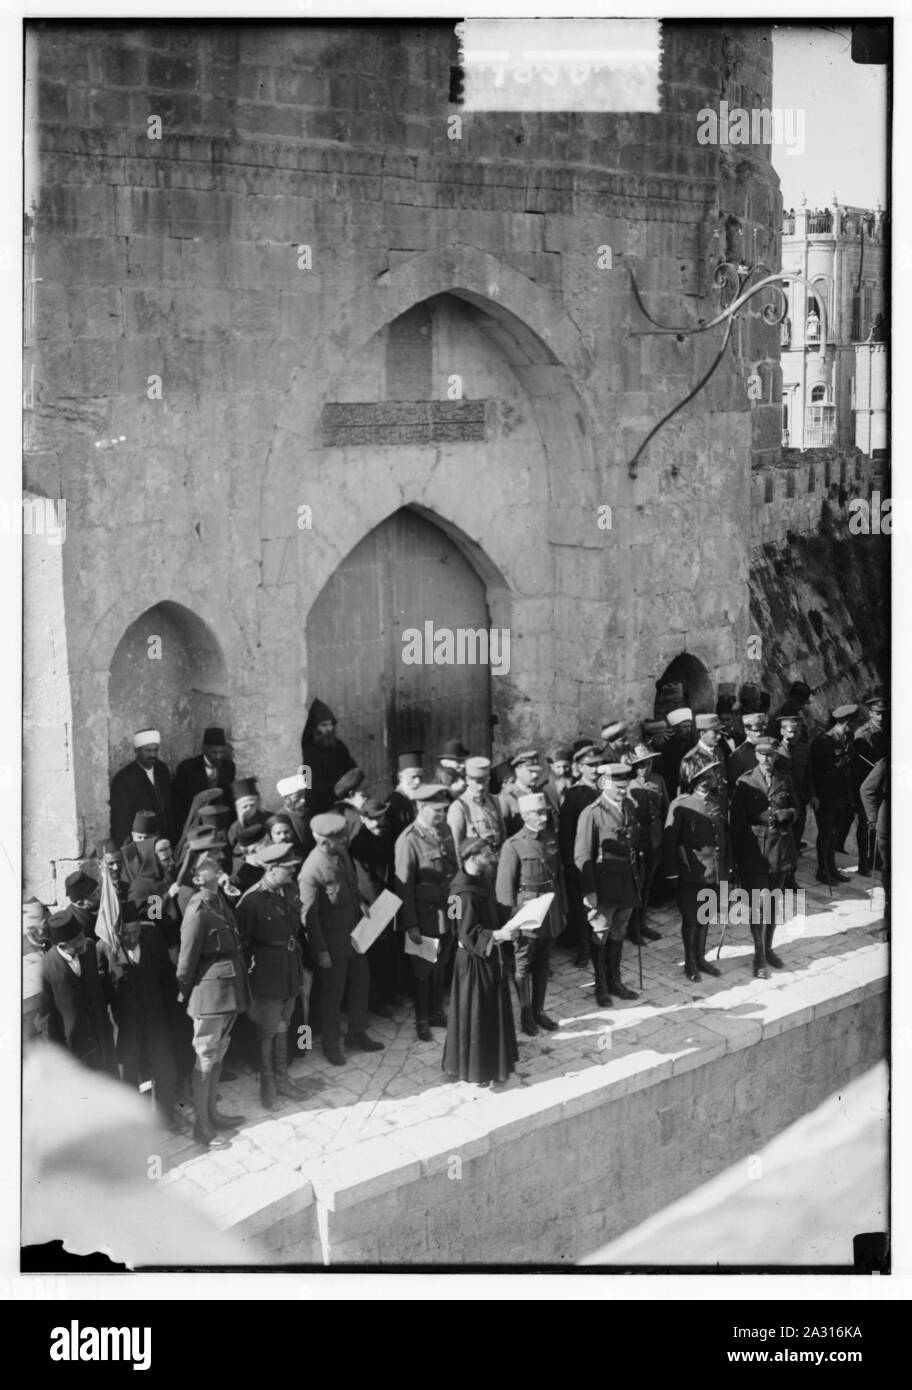 Entrée de Maréchal Allenby, Jérusalem, le 11 décembre 1917. Moine franciscain la lecture de la proclamation en Français Banque D'Images